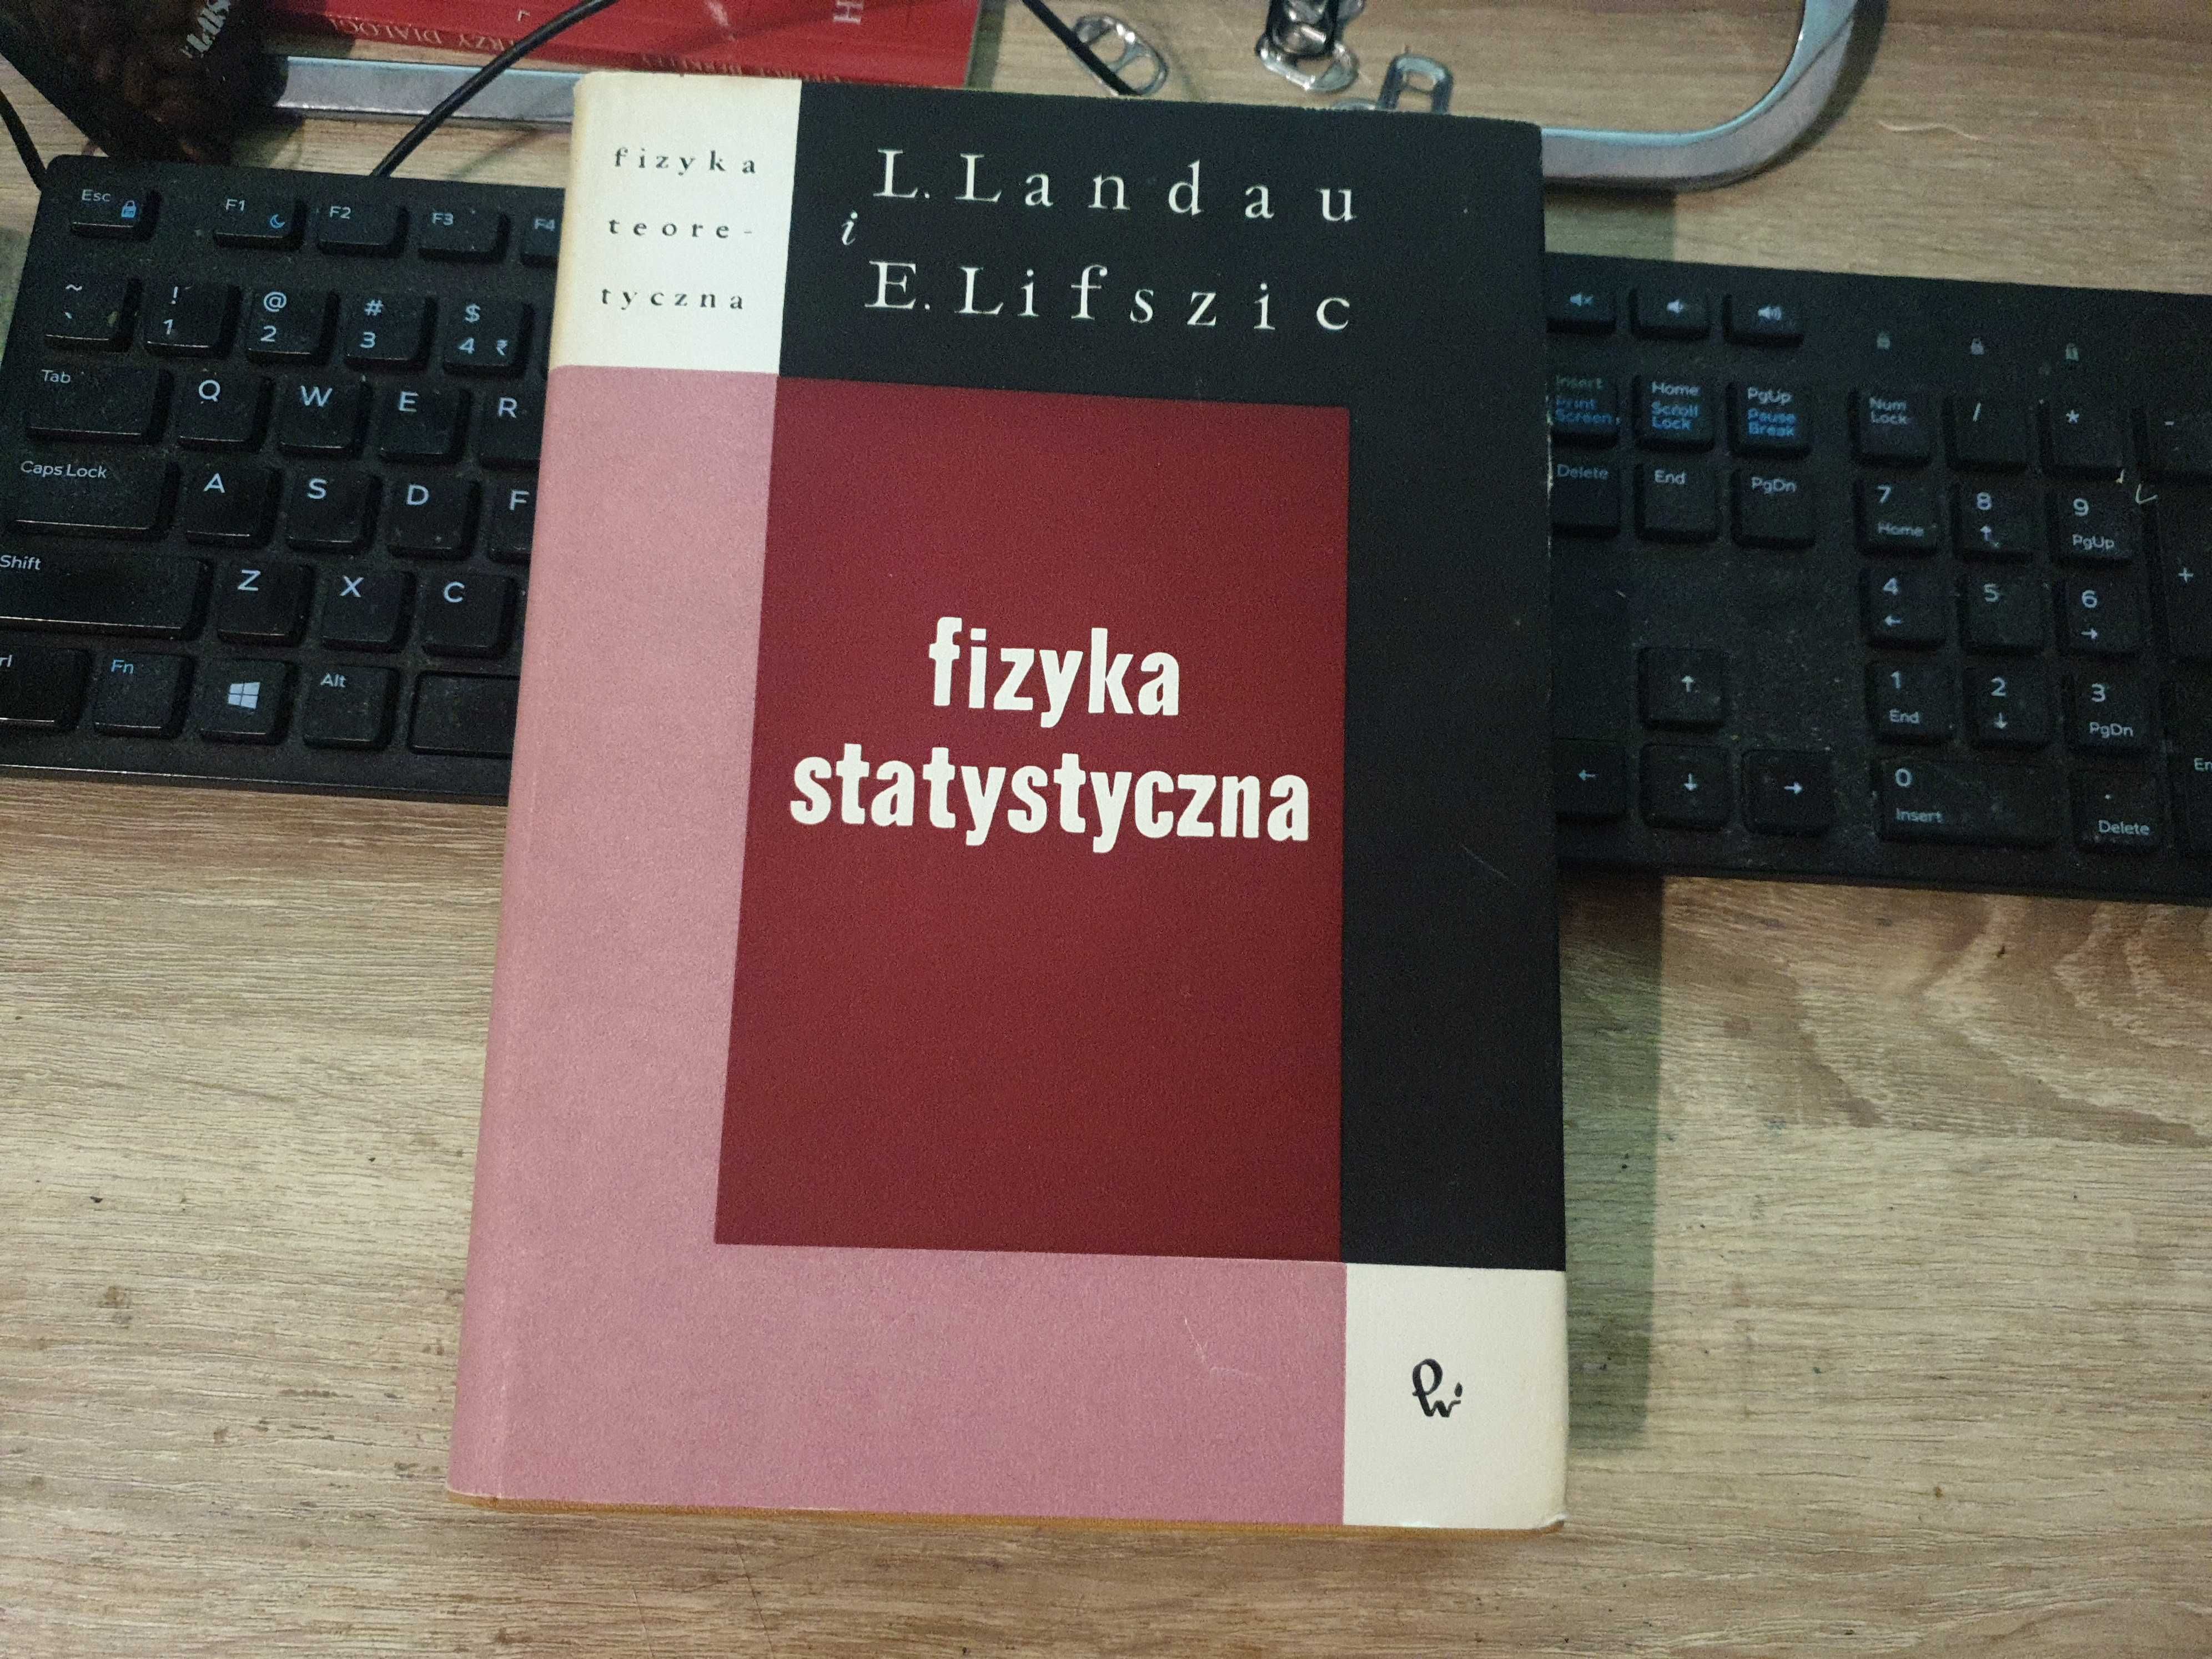 Fizyka statystyczna - Jewgienij M. Lifszyc, L. Landau